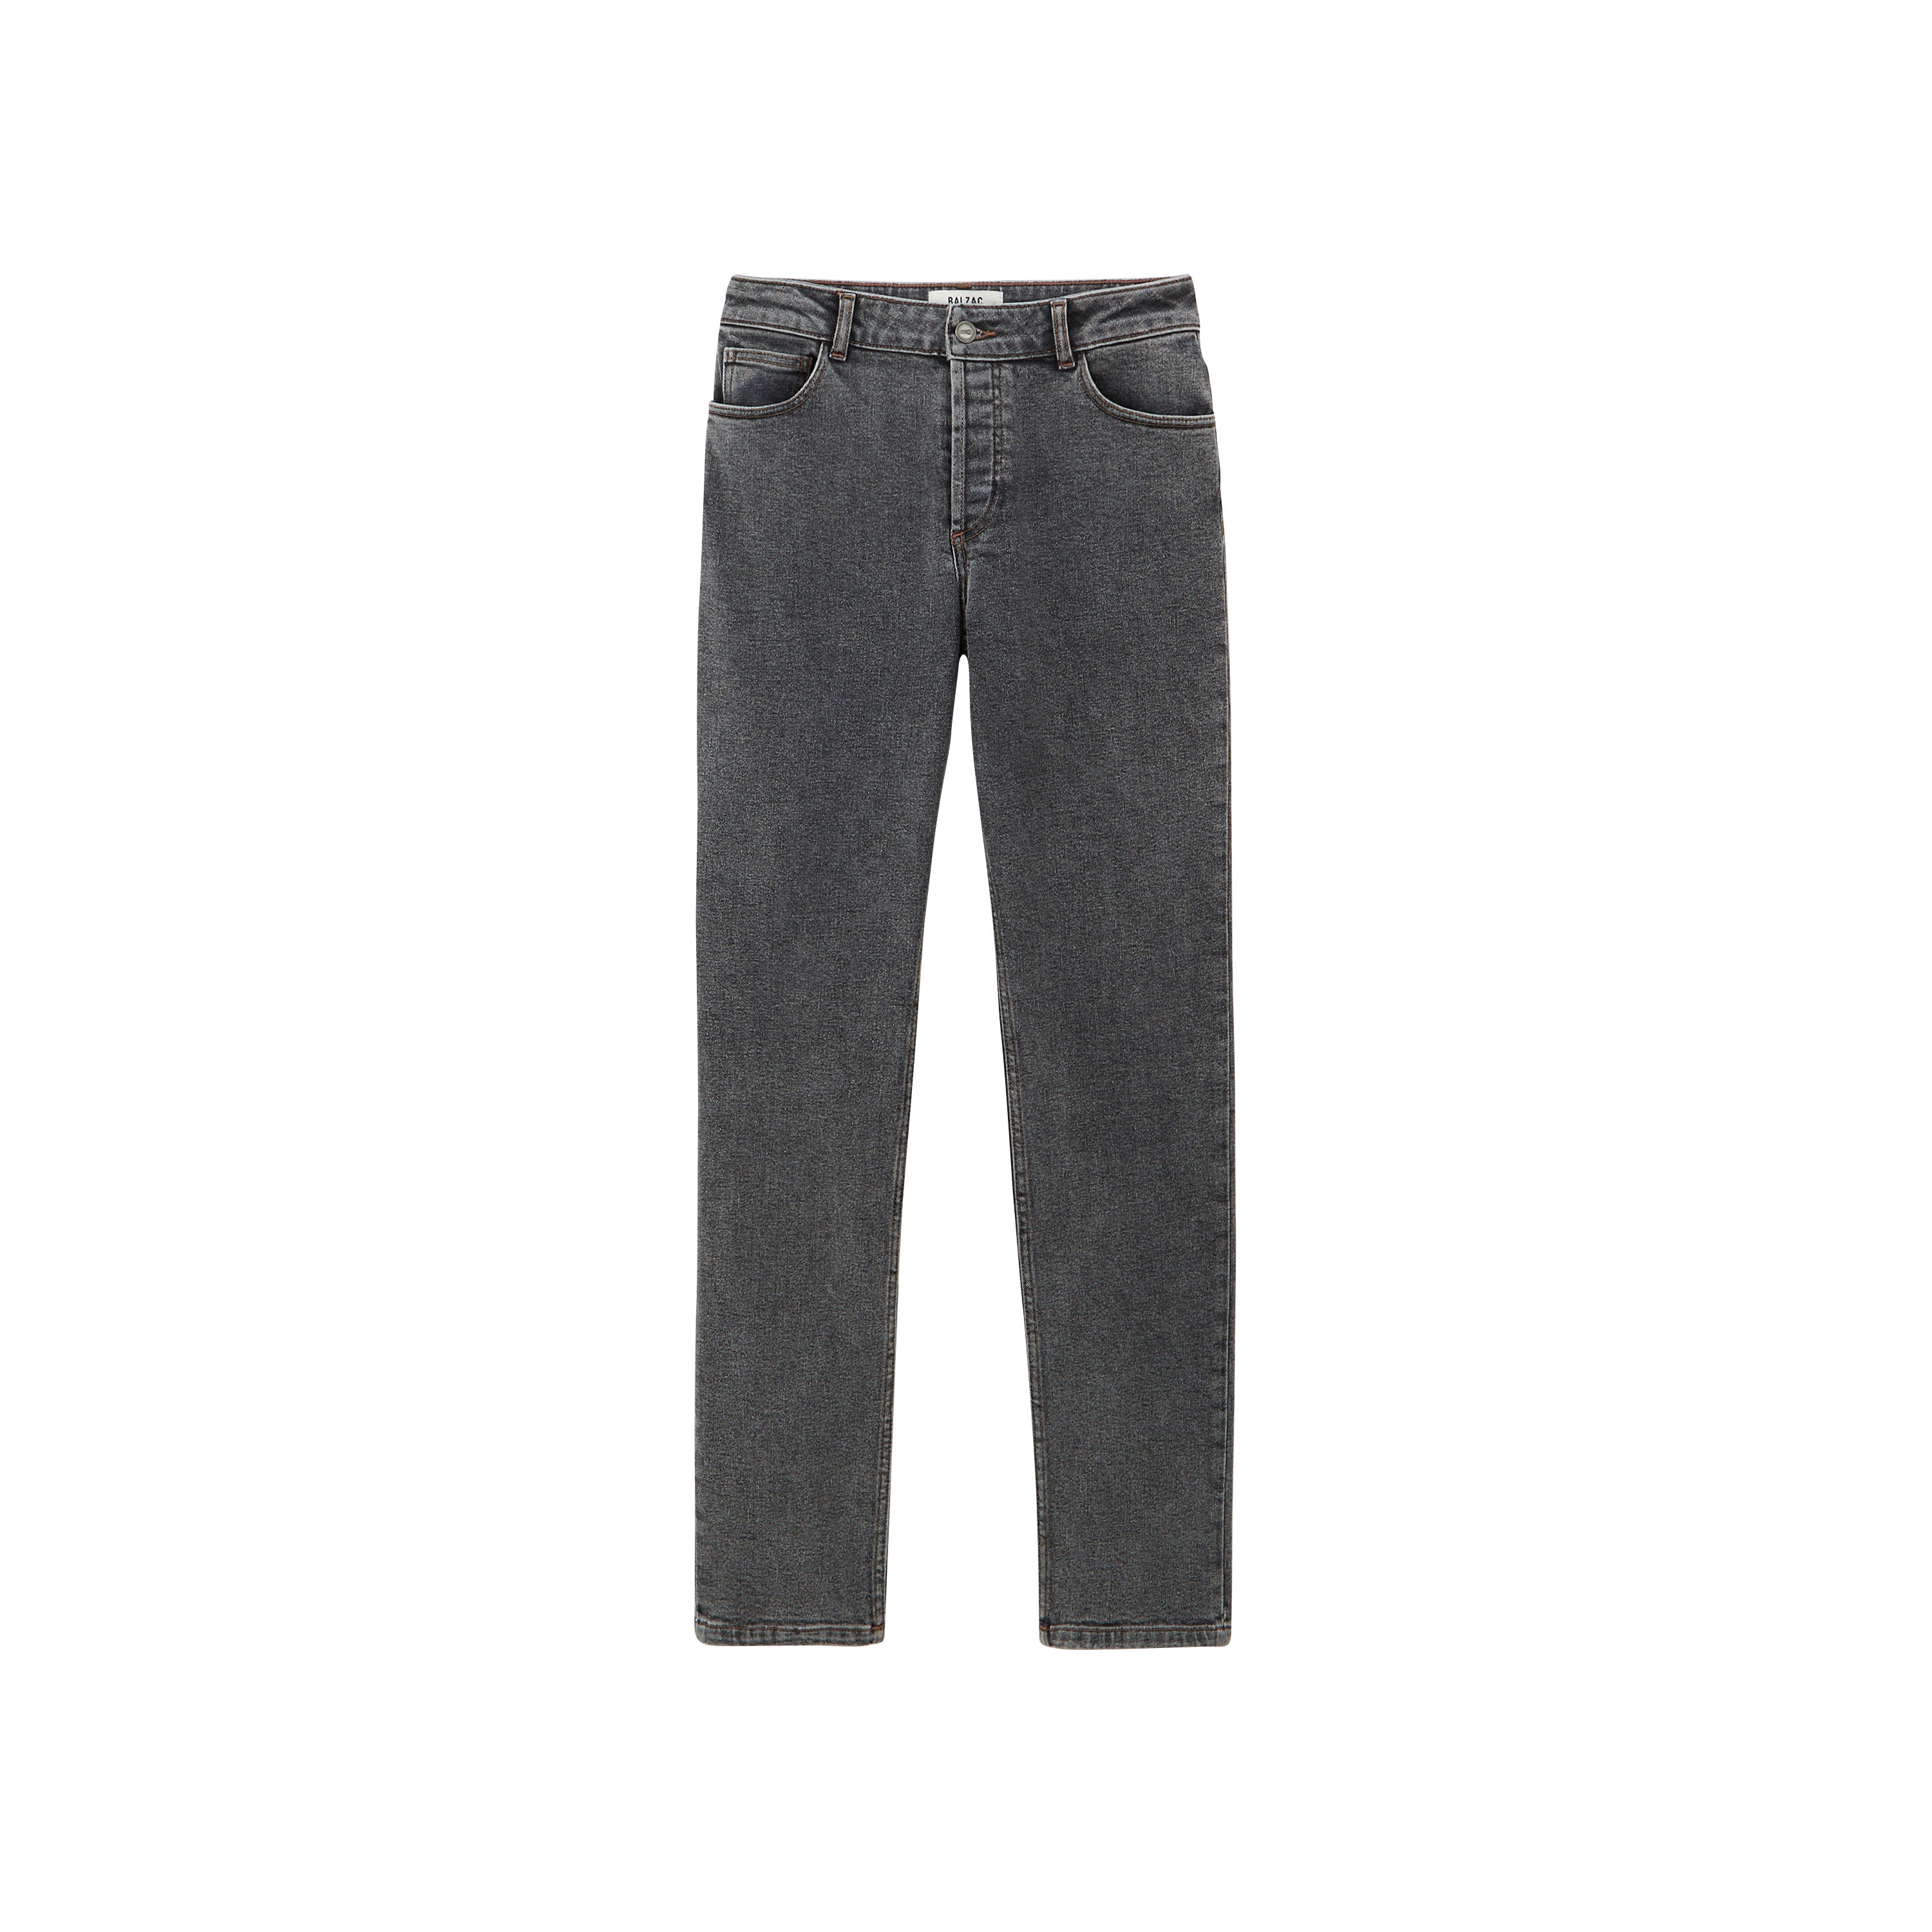 Fauve ash gray jeans